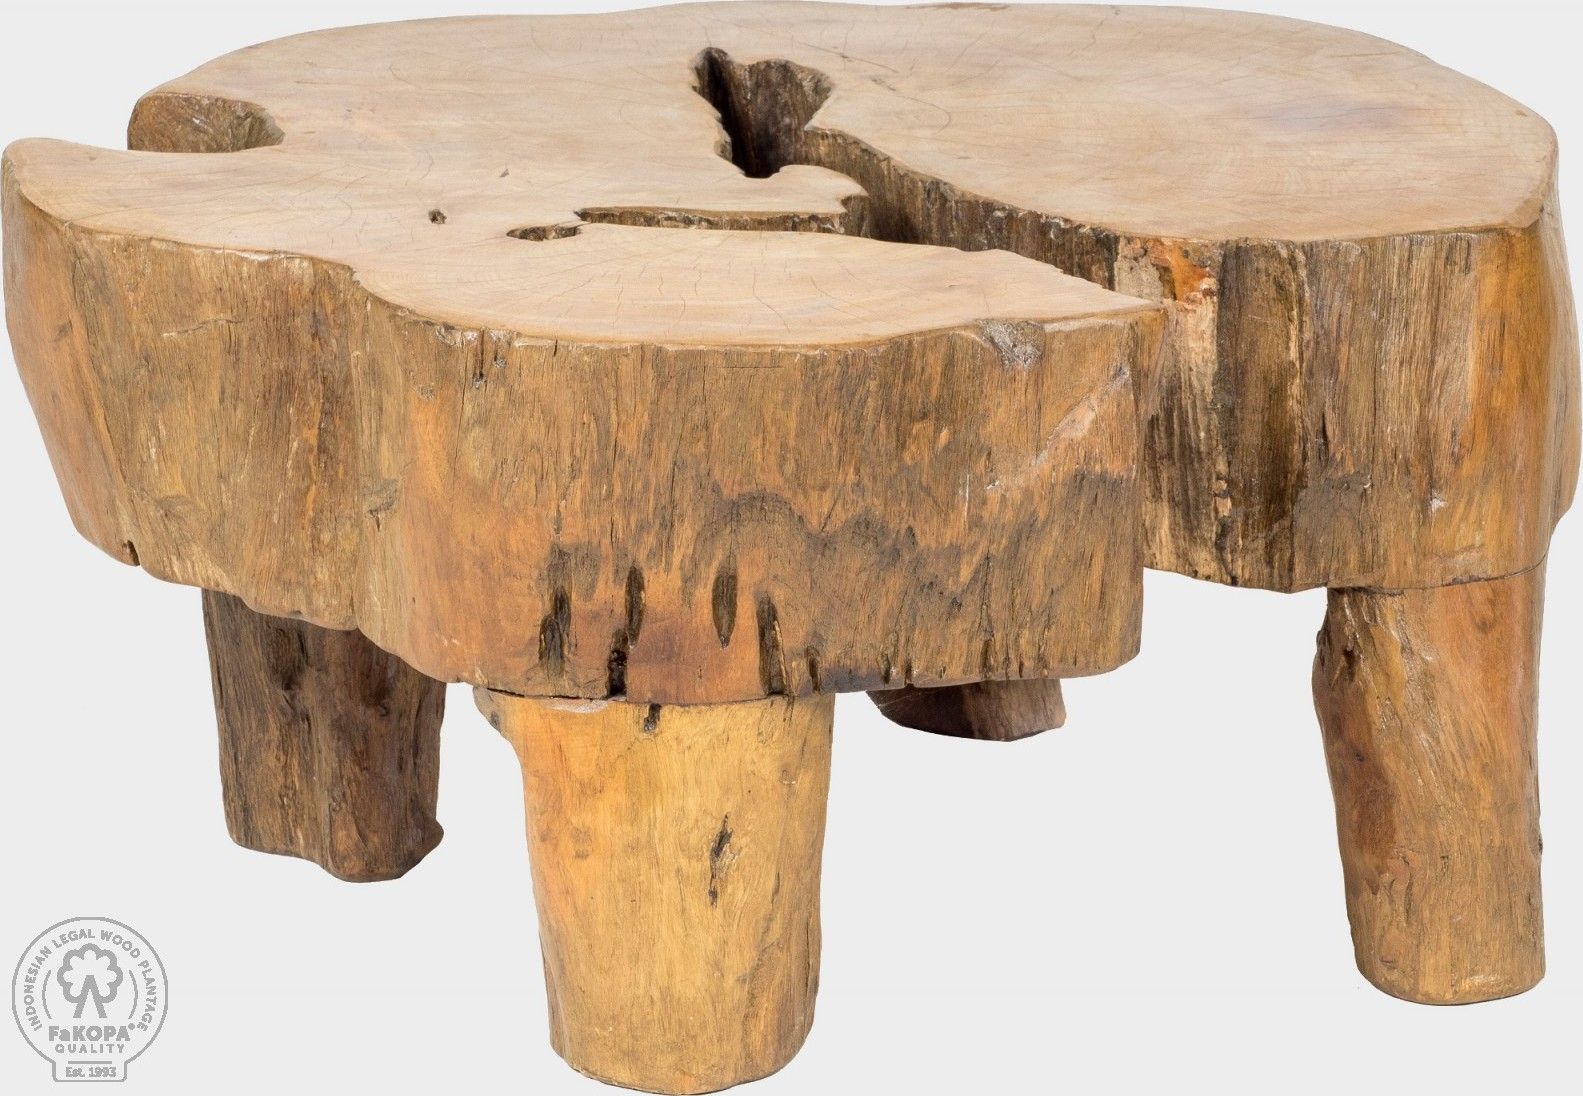 FaKOPA Masivní stolek orientální styl,  vyrobeno z kořene teaku Phoebe Mdum - M DUM.cz